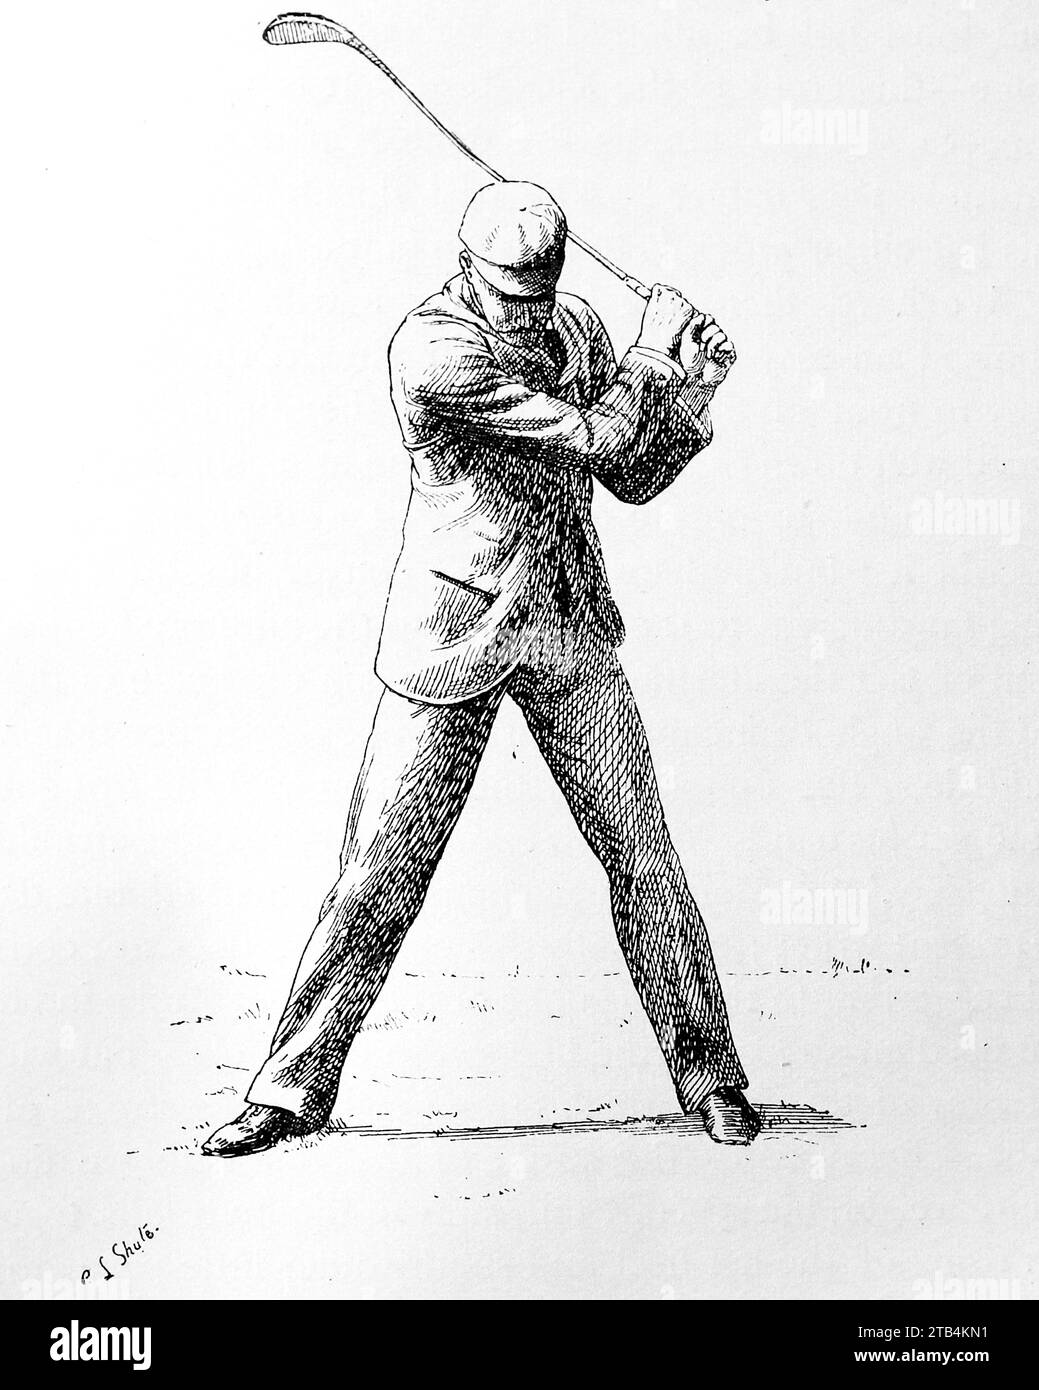 Alla fine dell'oscillazione, (come non dovrebbe essere), da E.L. Shute. Da un'illustrazione sul golf, datata dal 1889 al 1901. La storia del golf è lunga. Anche se le sue origini sono contestate, gli storici sono generalmente concordi sul fatto che quello che è conosciuto come "moderno" golf è iniziato nel Medioevo in Scozia. Fu solo dalla metà alla fine del XIX secolo che questo sport divenne più popolare in Gran Bretagna, nell'Impero britannico e poi negli Stati Uniti. Nel corso degli anni, l'umile palla da golf e il golf club sono cambiati enormemente. Foto Stock